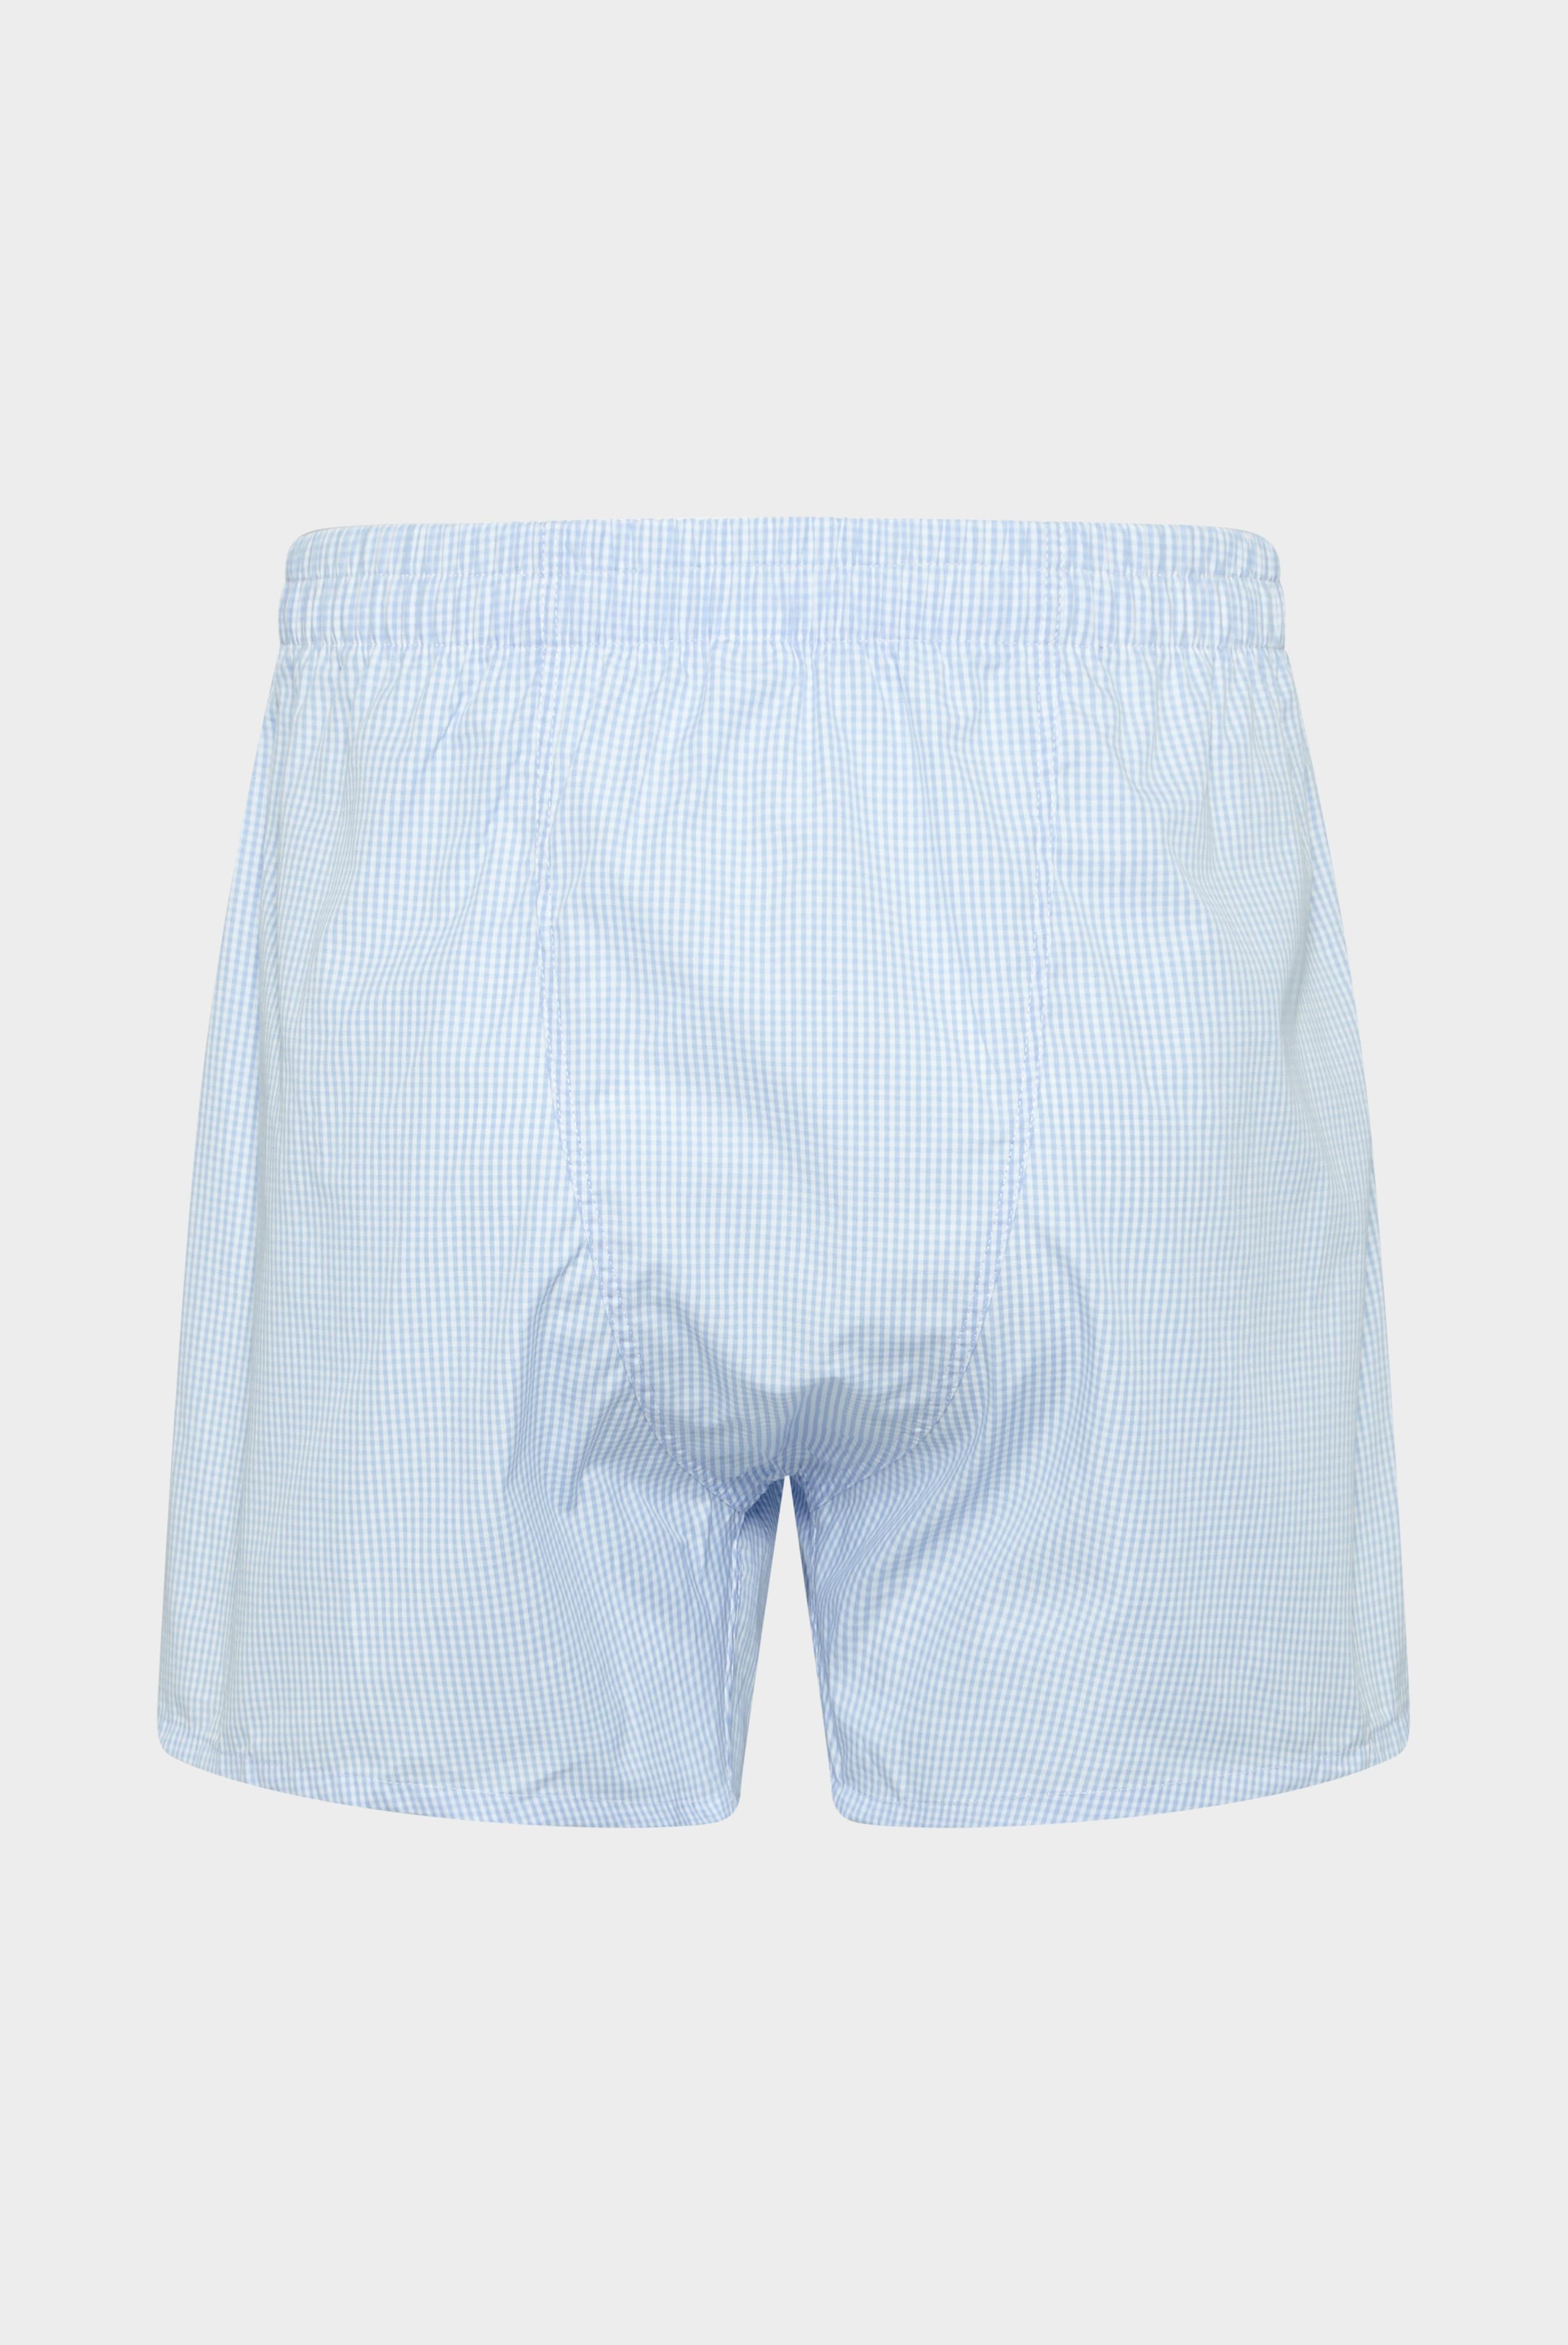 Underwear+Poplin Boxer Shorts+91.1100..141787.720.46